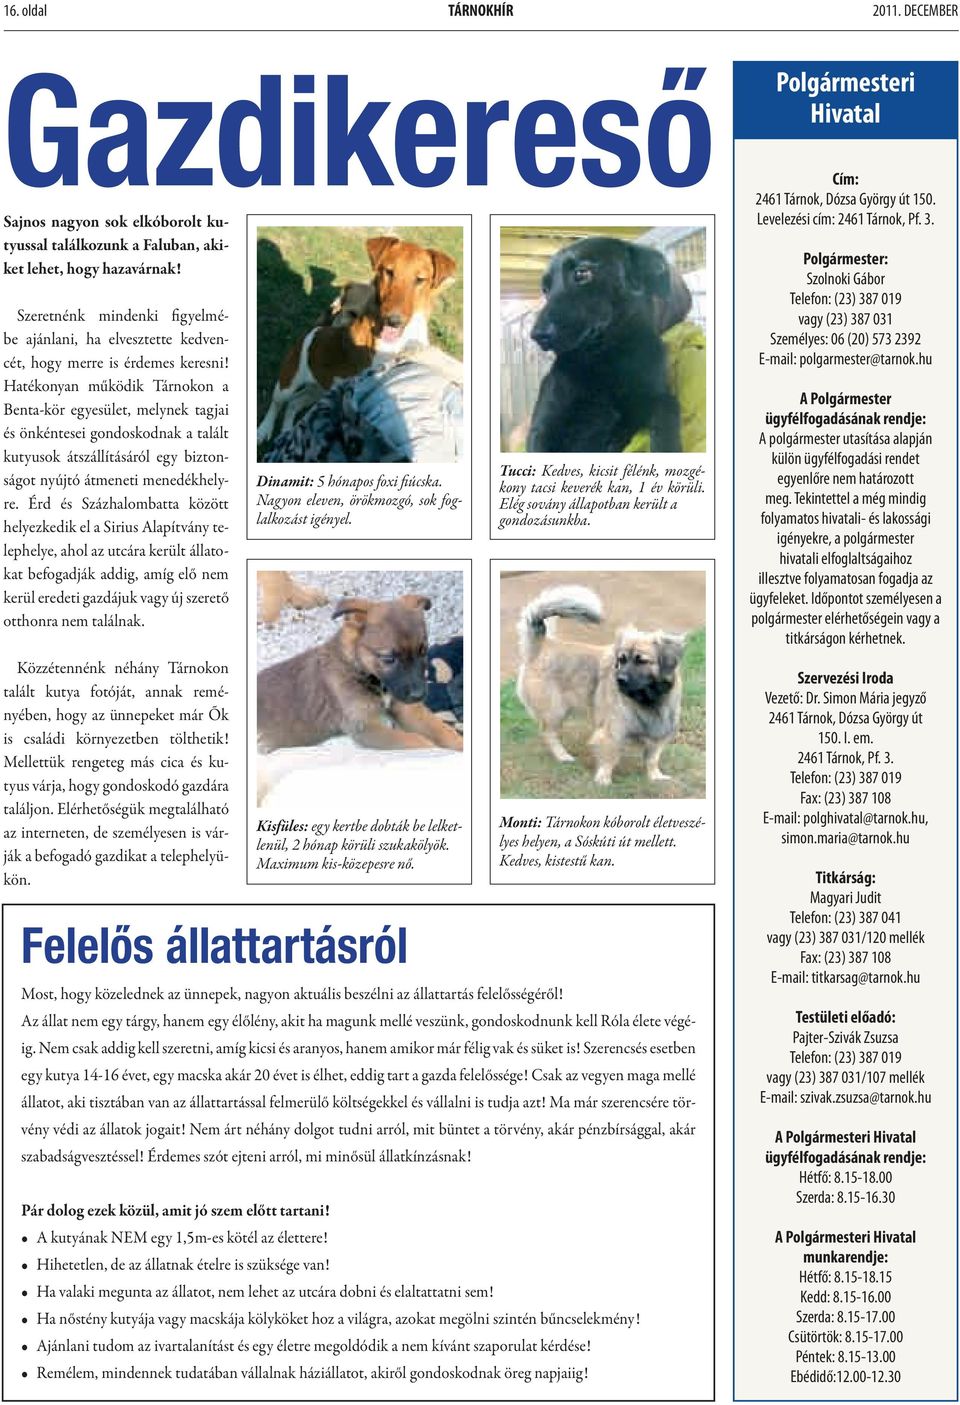 Hatékonyan működik Tárnokon a Benta-kör egyesület, melynek tagjai és önkéntesei gondoskodnak a talált kutyusok átszállításáról egy biztonságot nyújtó átmeneti menedékhelyre.